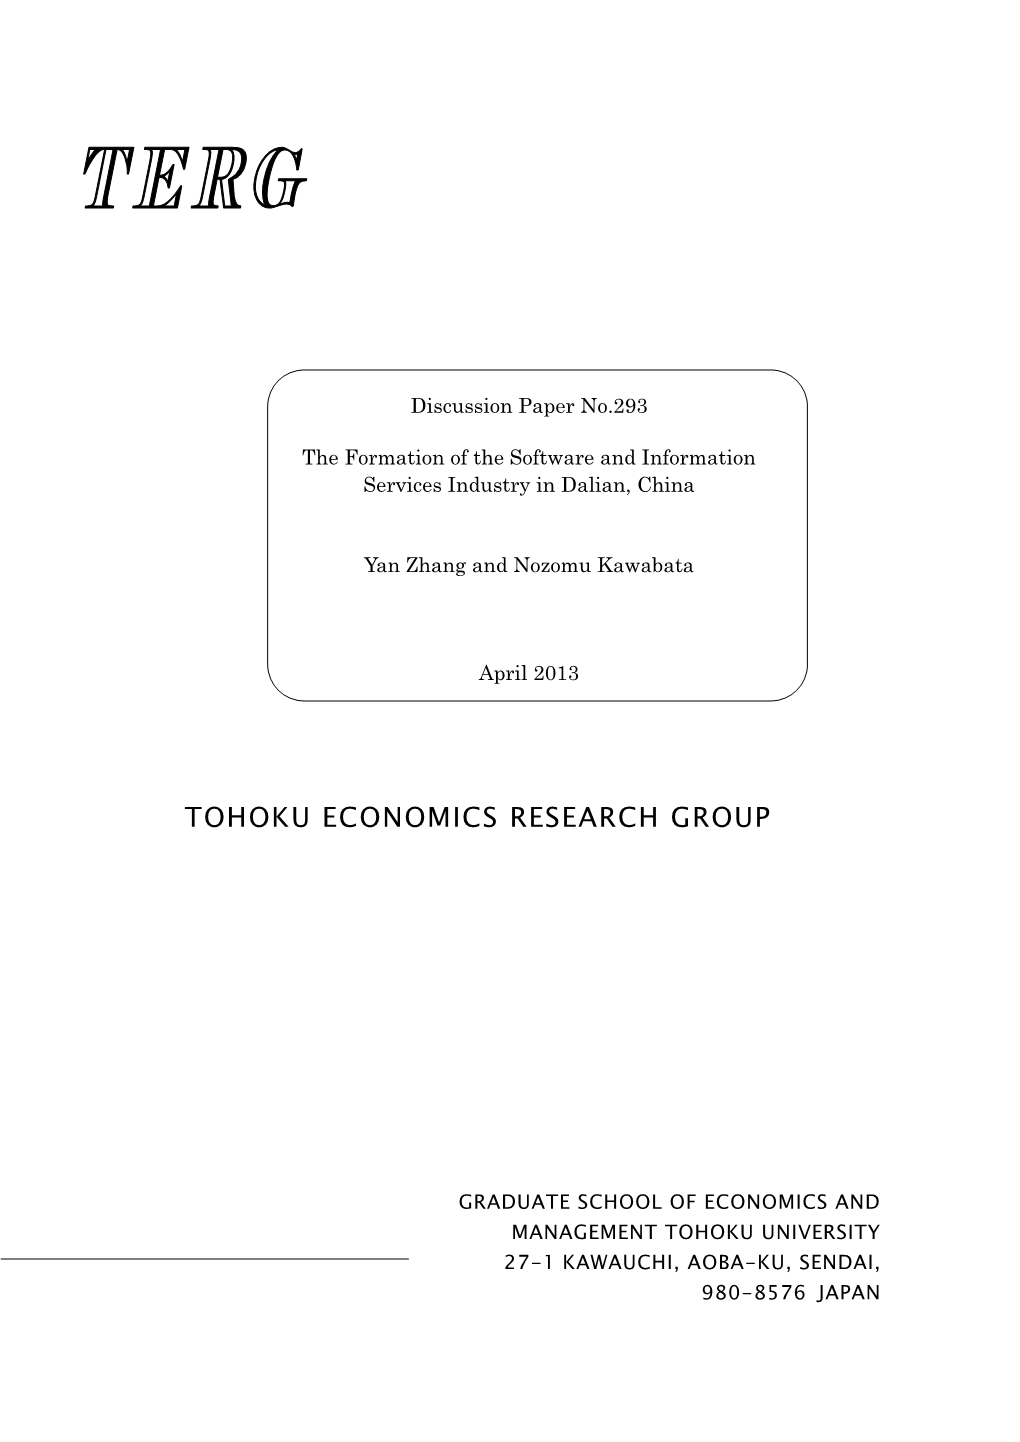 Tohoku Economics Research Group